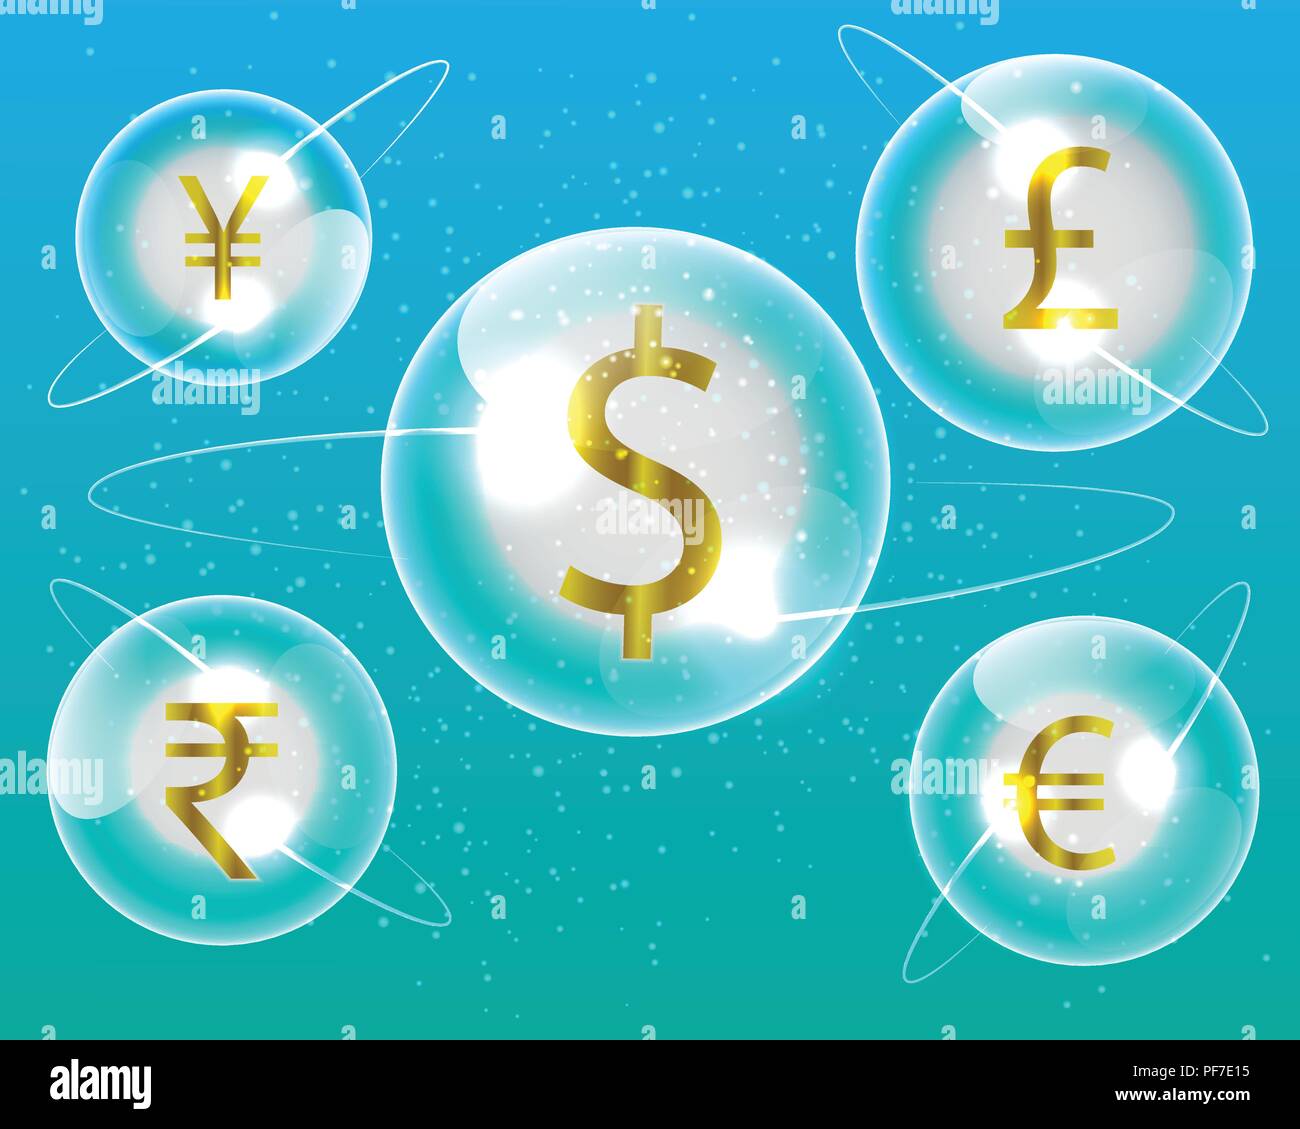 Simbolo di valuta dollaro,Euro,Rupia Indiana,British Pound,yuan cinese,Yen giapponese valuta il modello di business di concetti di exchange. Illustrazione Vettoriale eps10 Illustrazione Vettoriale